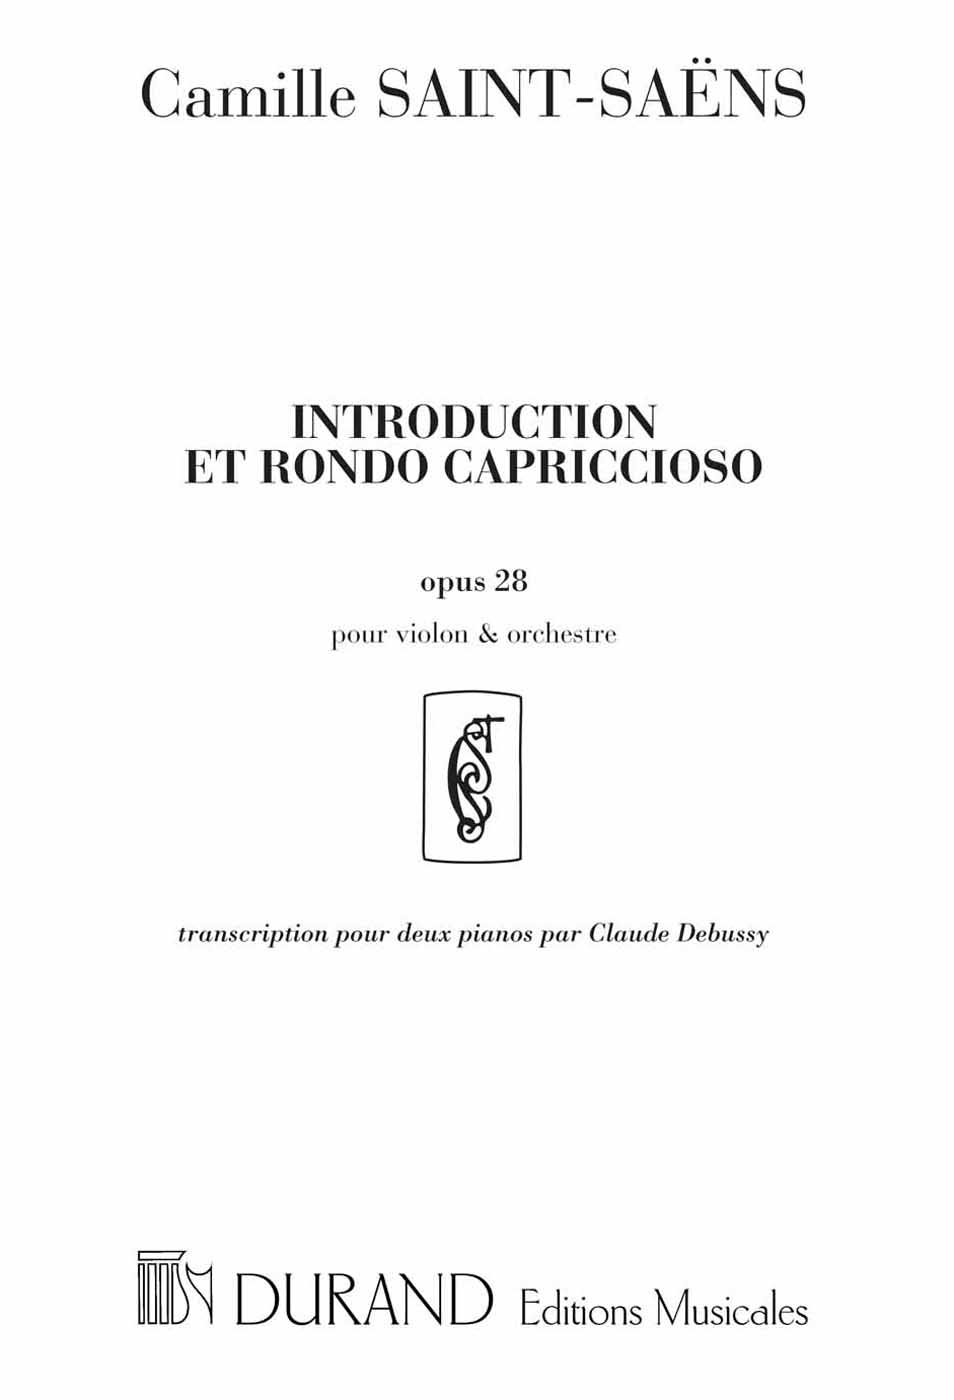 Introduction et rondó capriccioso opus 28: transcription pour deux Pianos par Claude Debussy